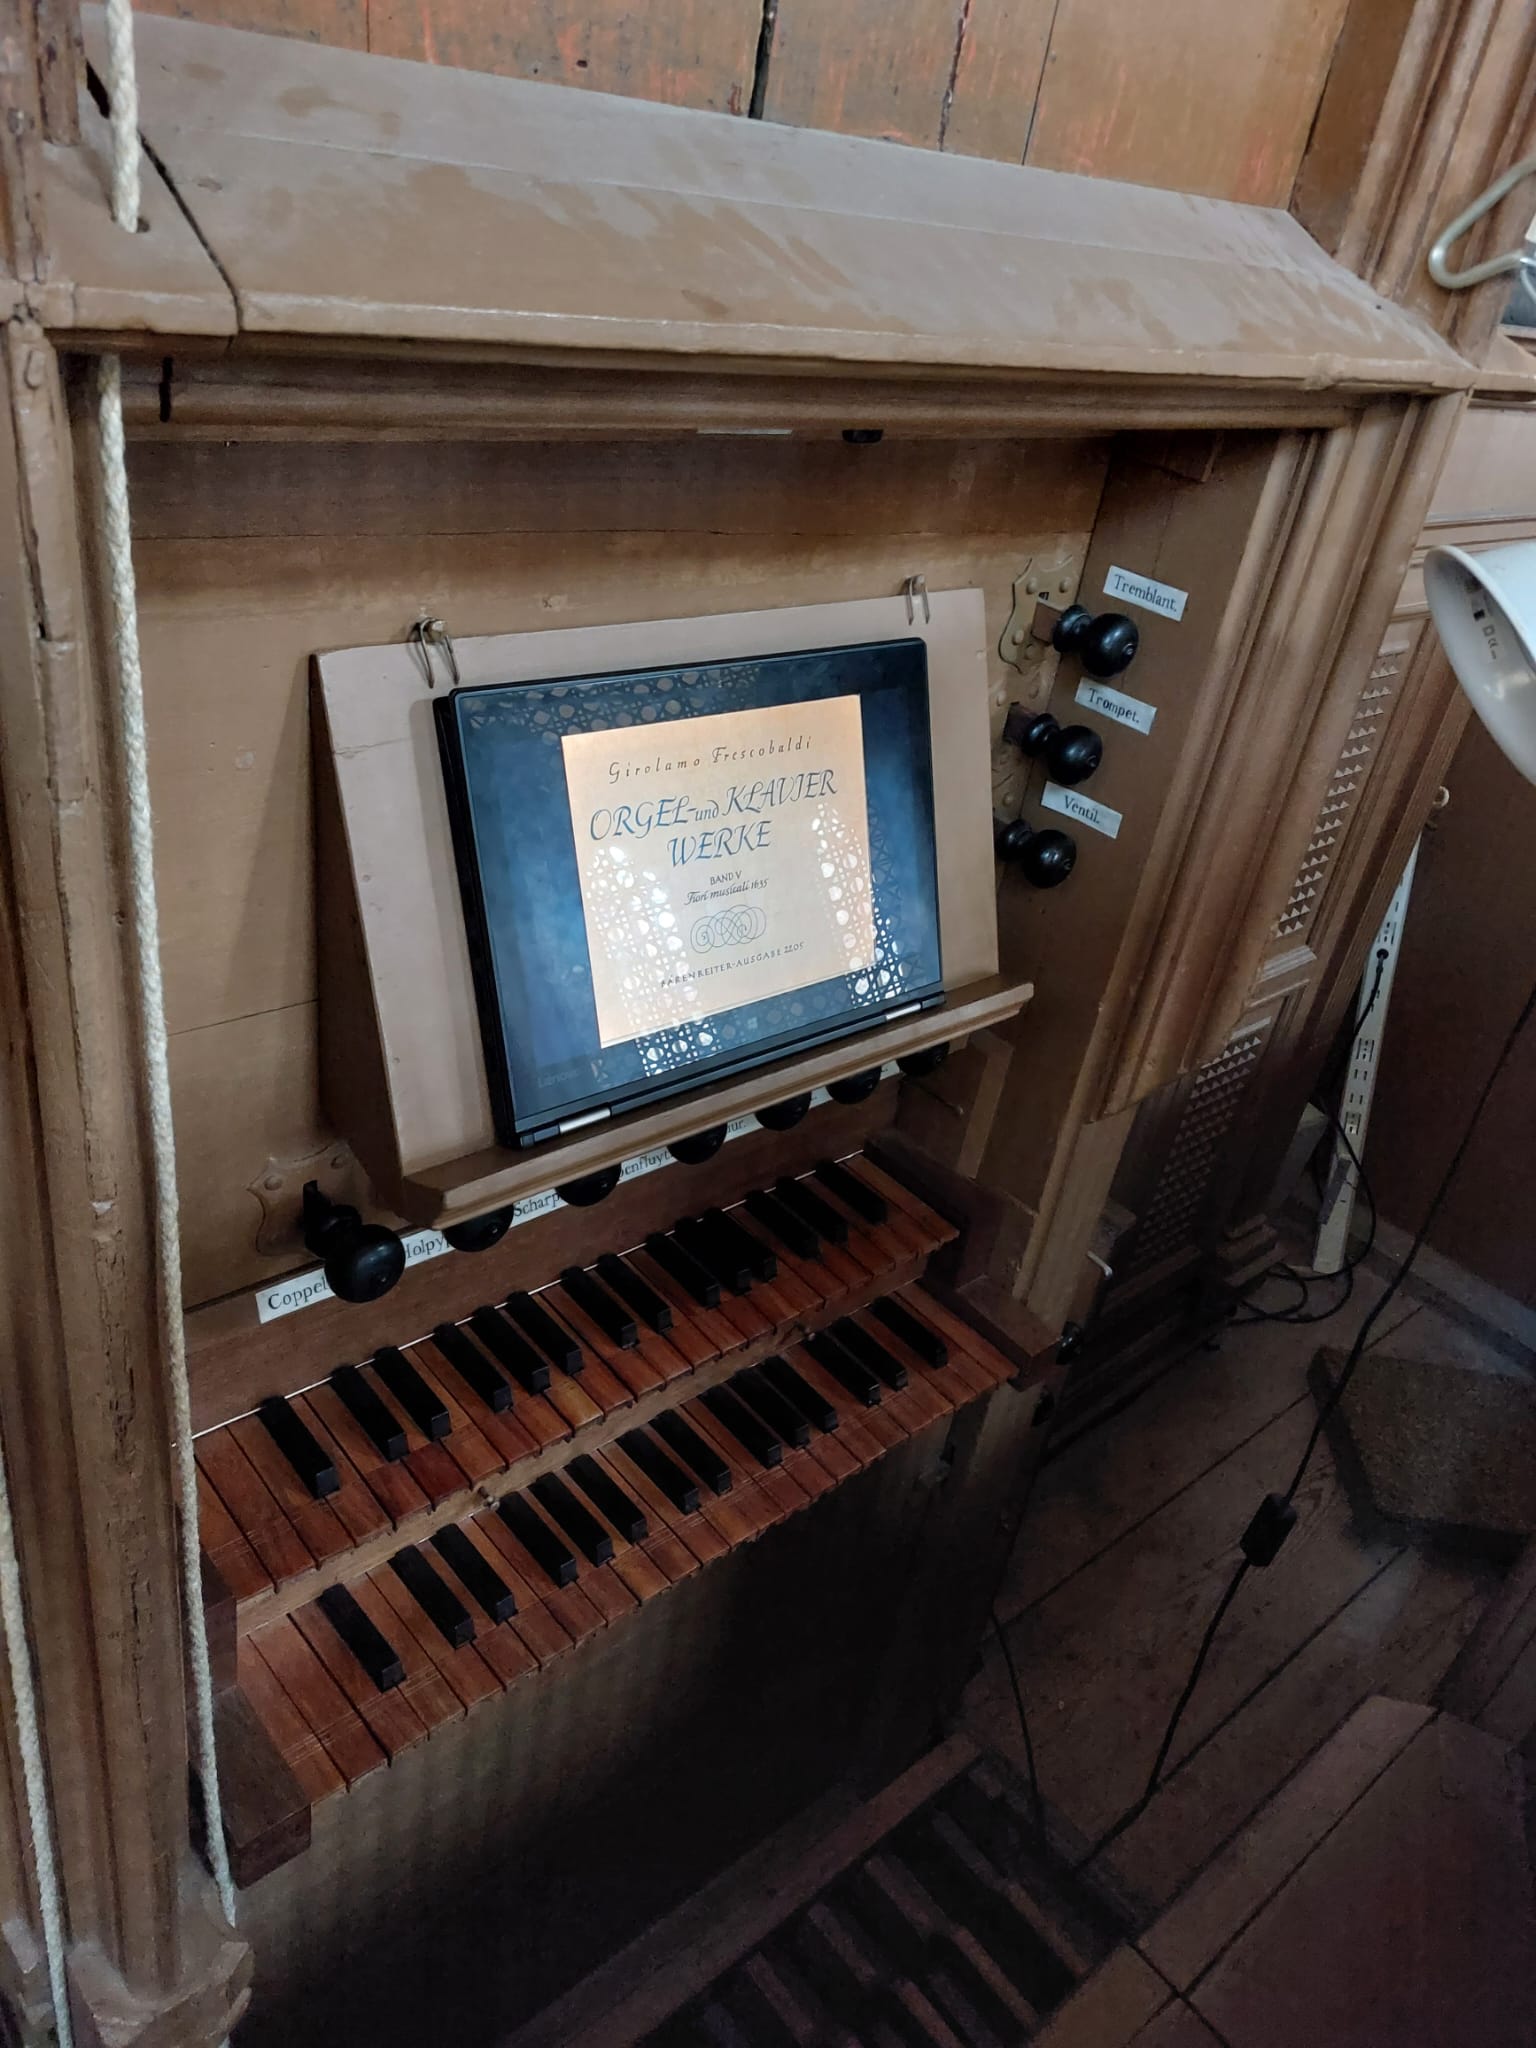 Concert op het koororgel in Alkmaar, het oudst bespeelbare orgel in Nederland